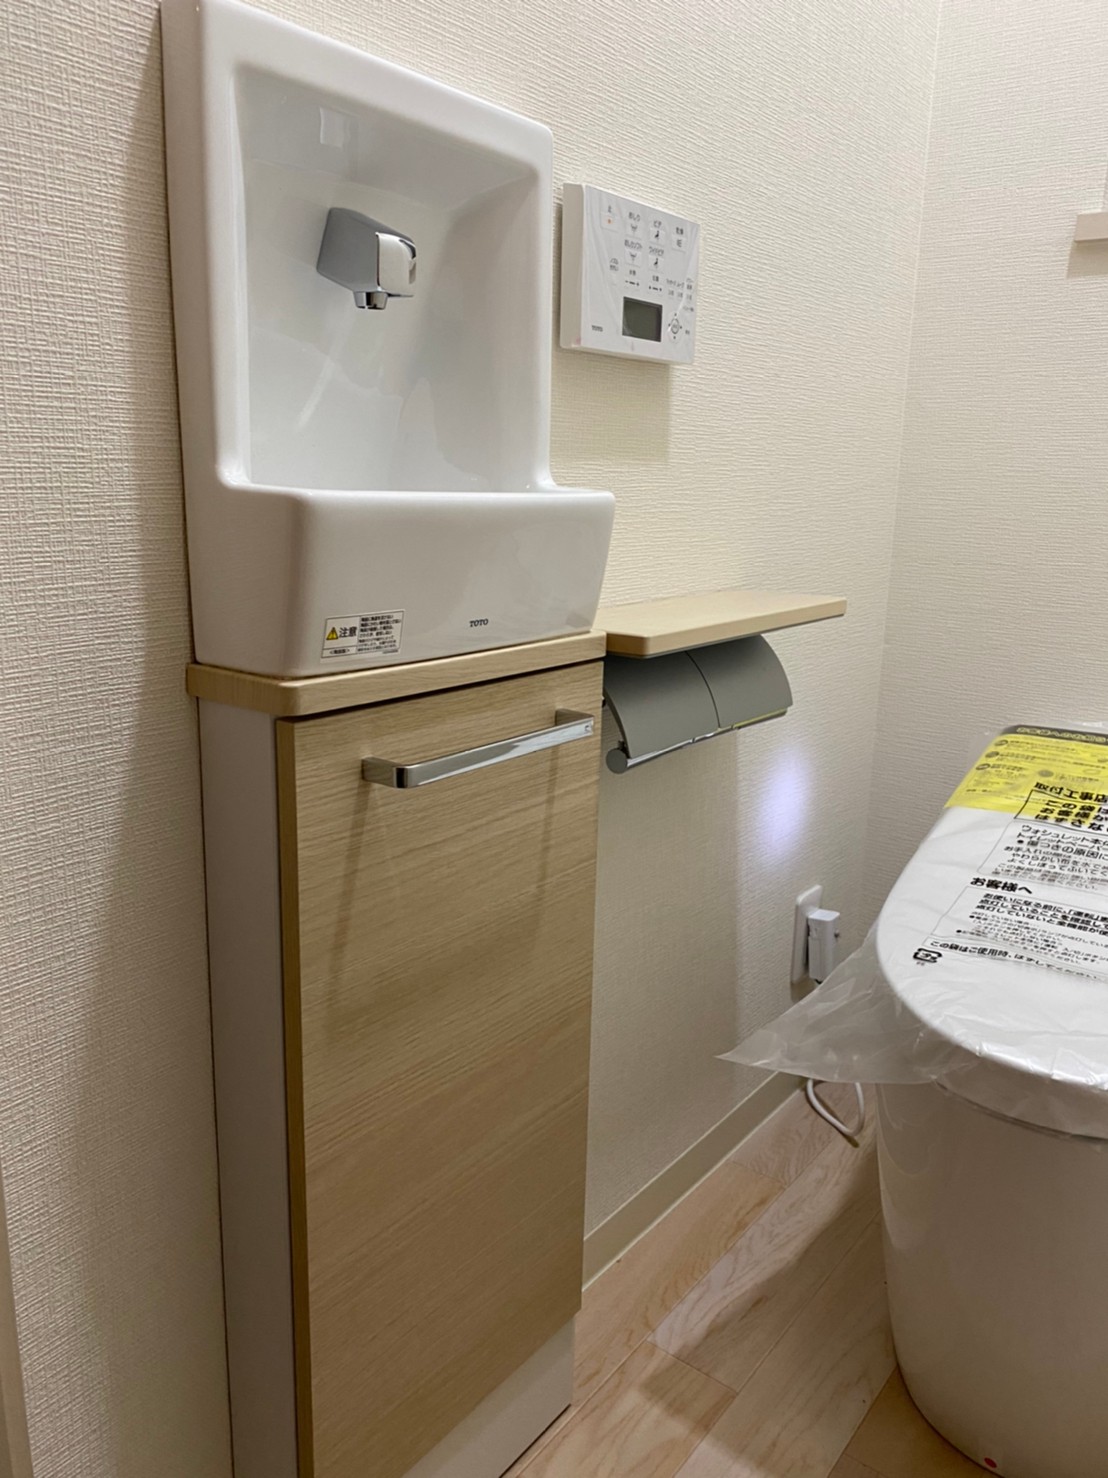 トイレリフォーム工事 TOTOネオレスト スリムシリーズ手洗い器埋め込み型 神戸市西区 須磨区 ならはら住宅設備